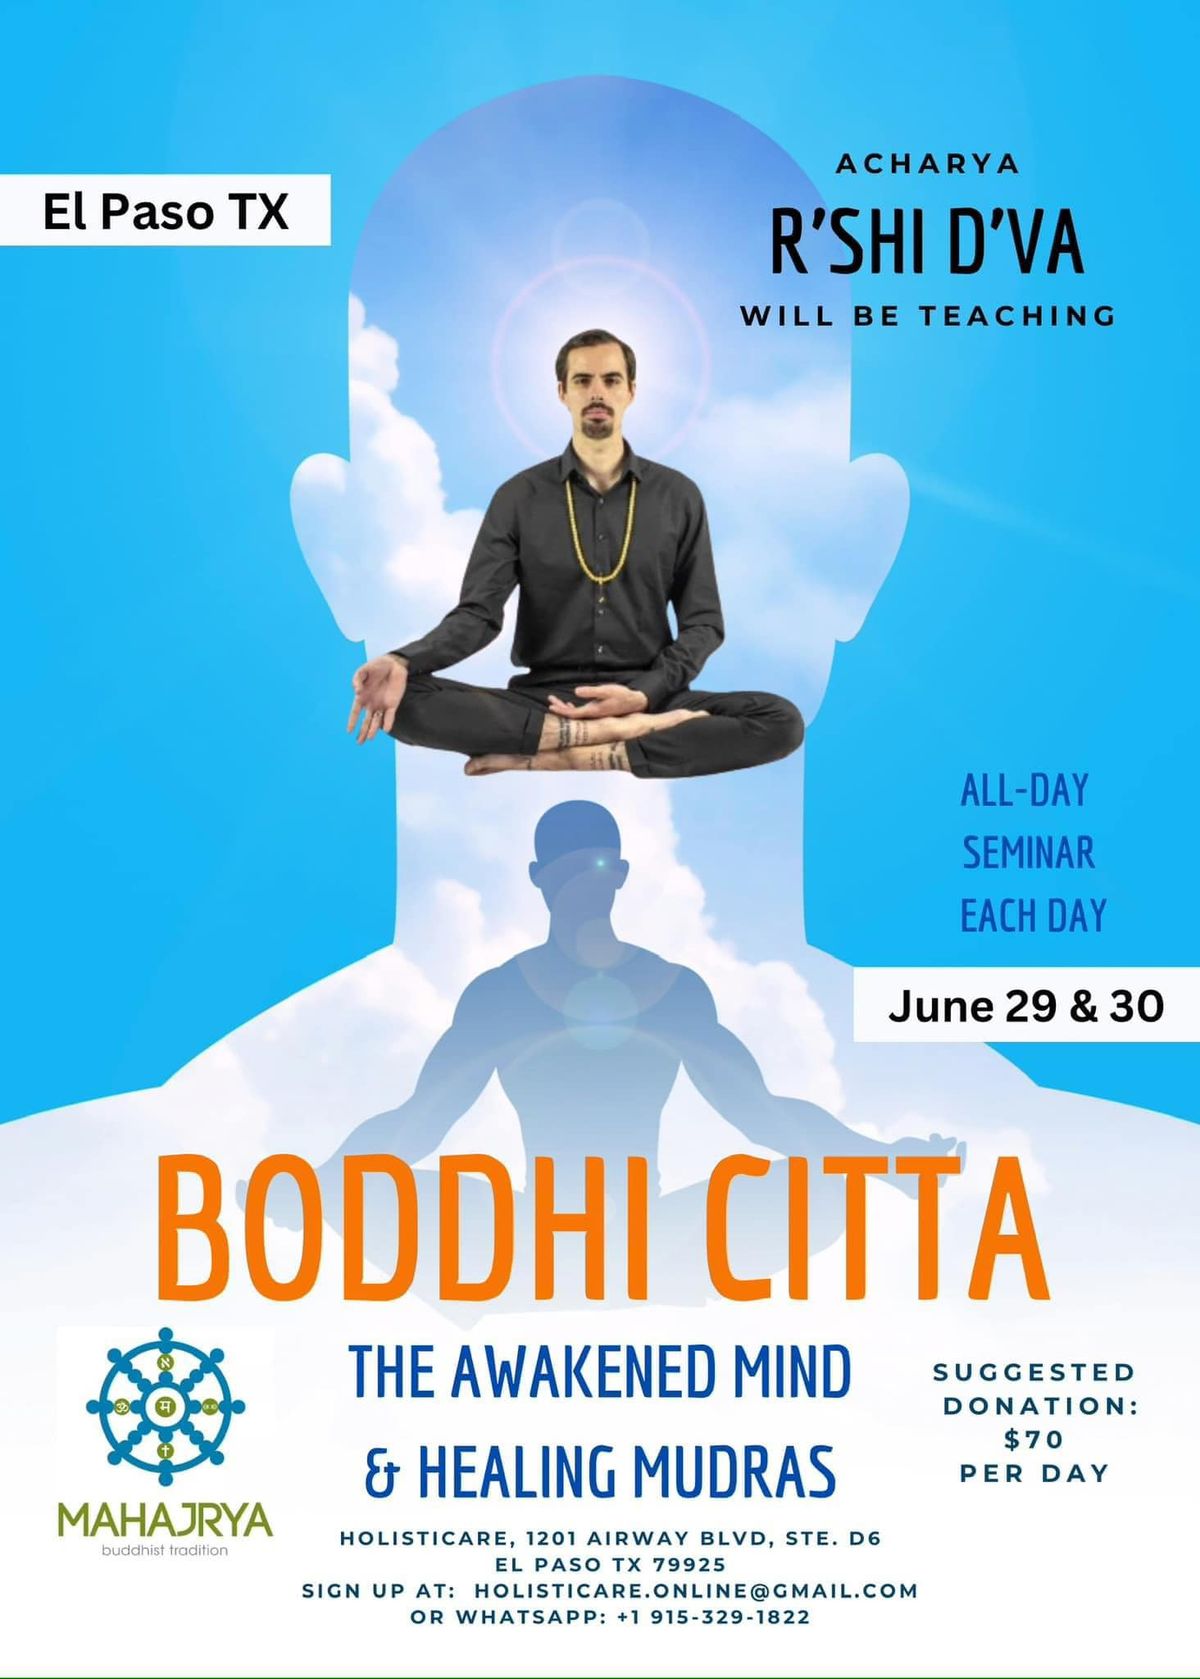 Boddhi Citta Seminar: The Awakened Mind & Healing Mudras